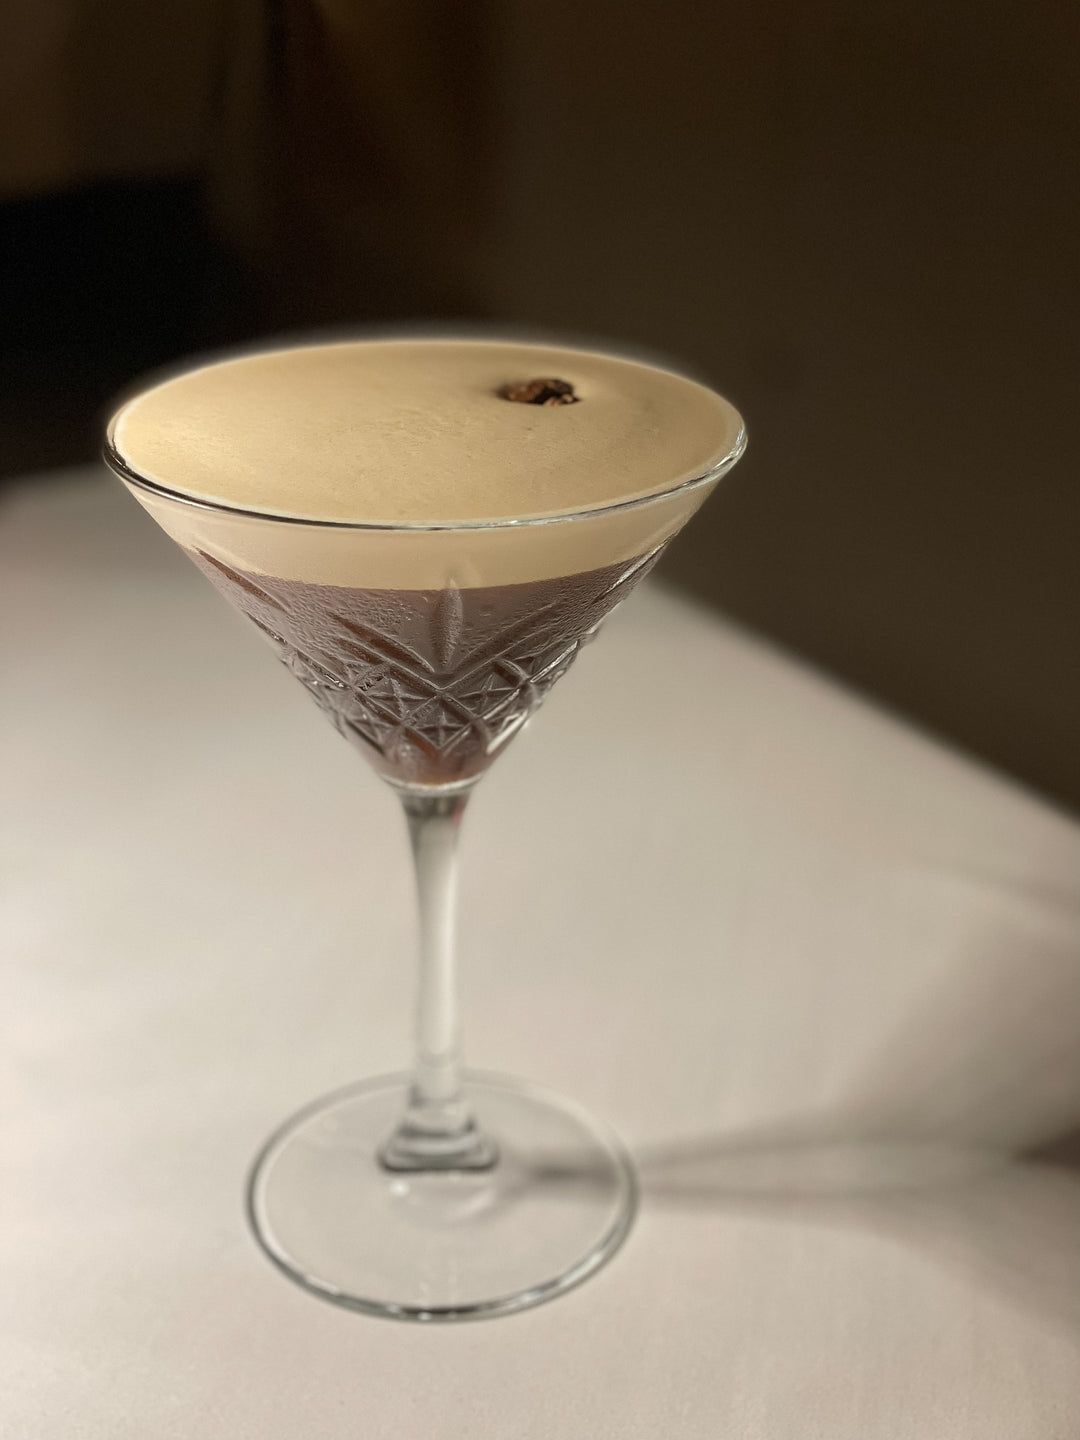 Orchard Espresso Martini